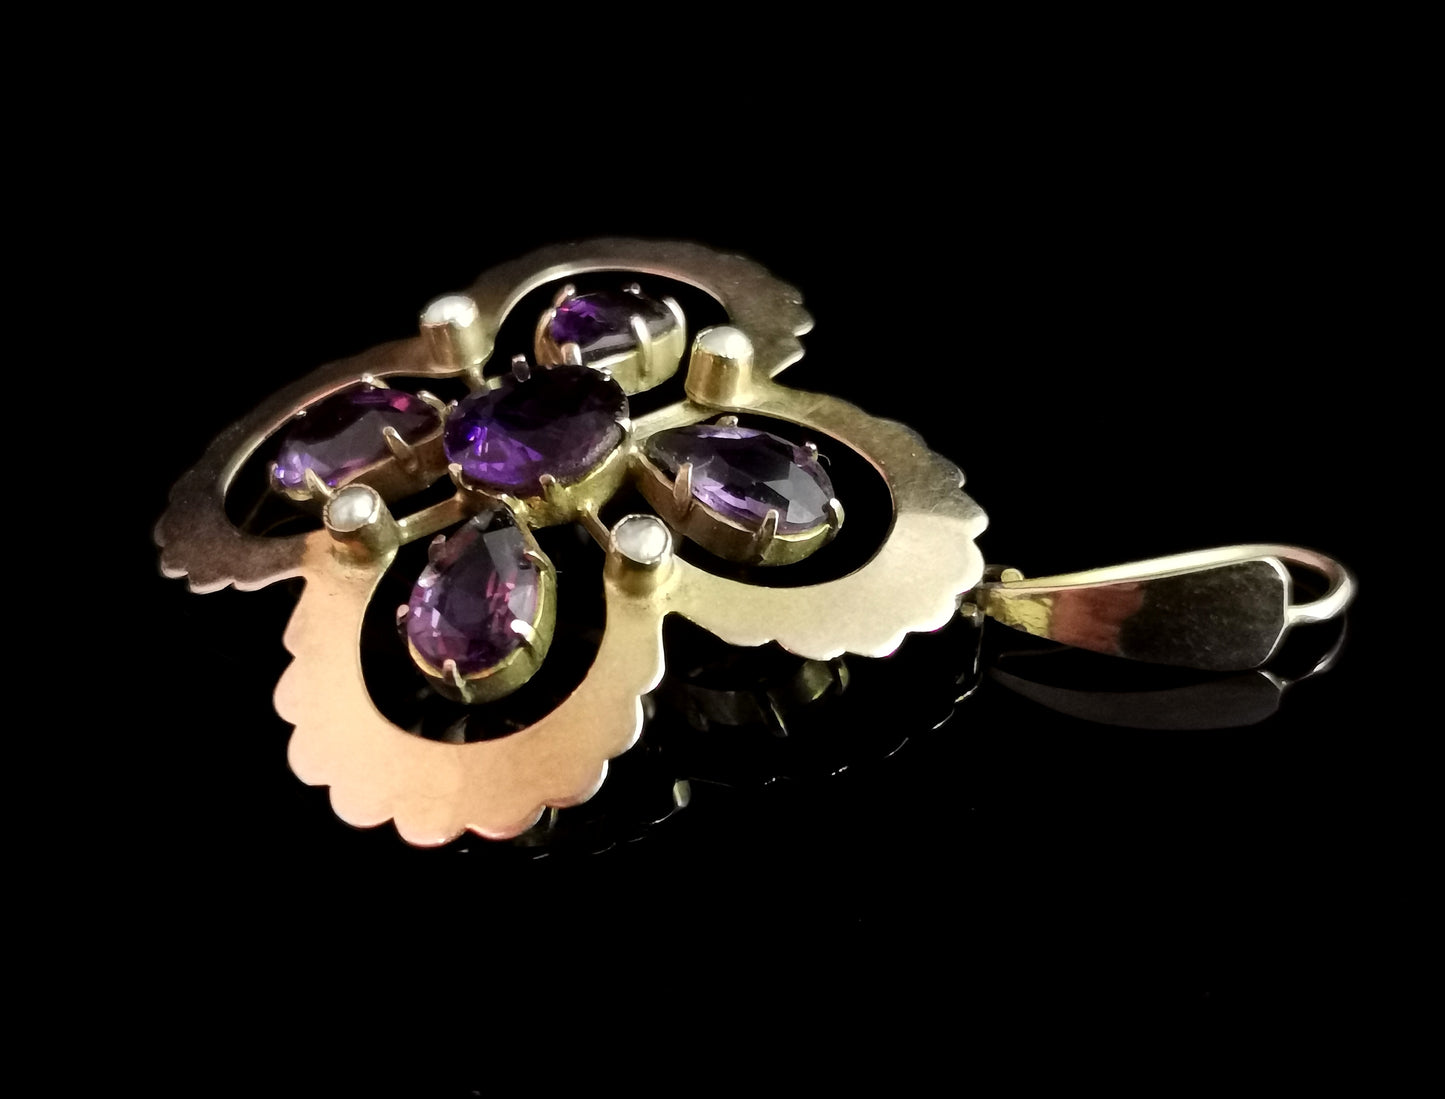 Antique Art Nouveau Amethyst and pearl pendant, 9ct gold, Quatrefoil floral